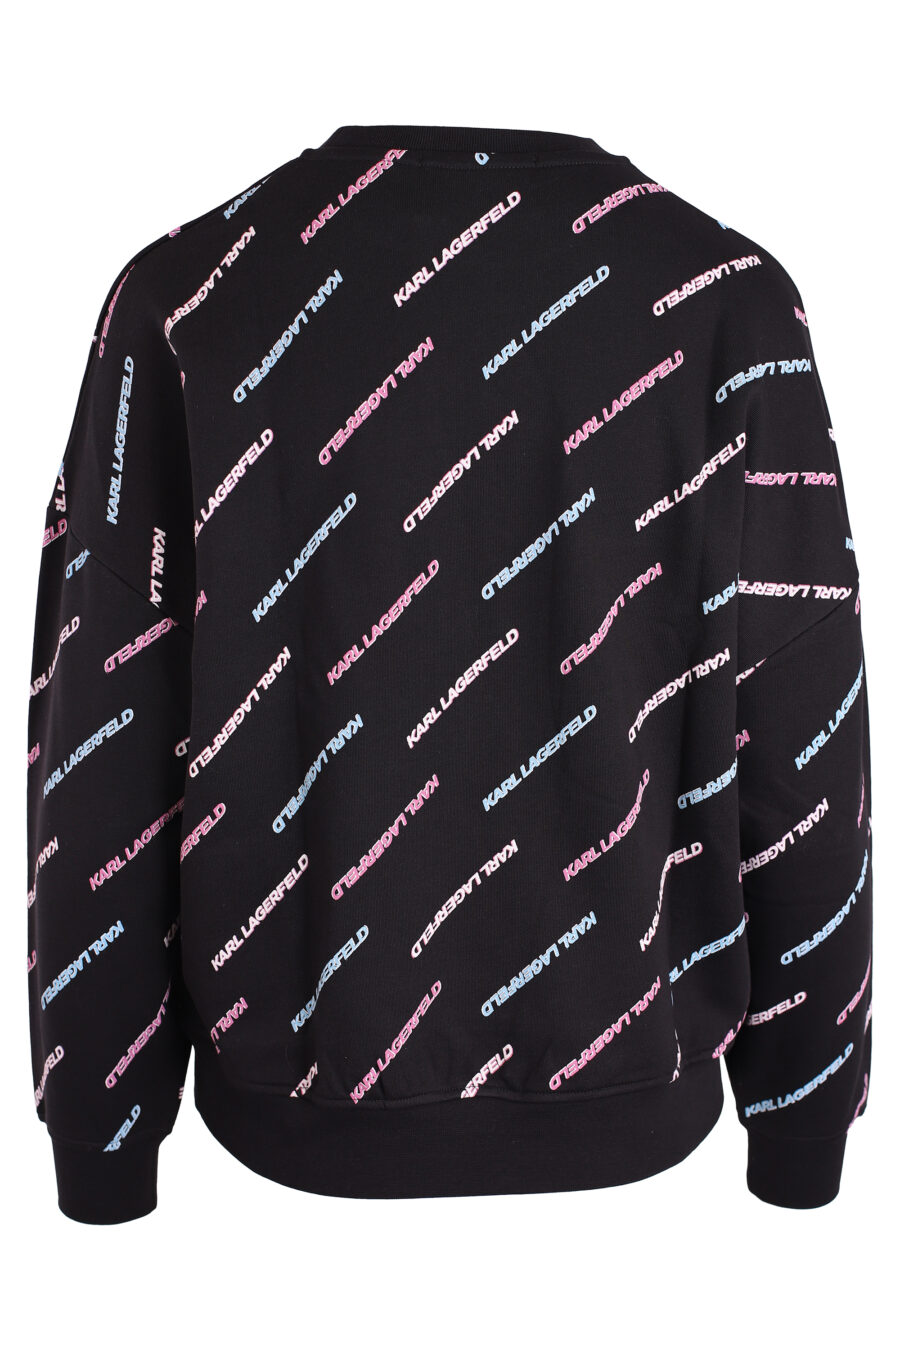 Schwarzes Sweatshirt "all over logo" mehrfarbig - IMG 3338